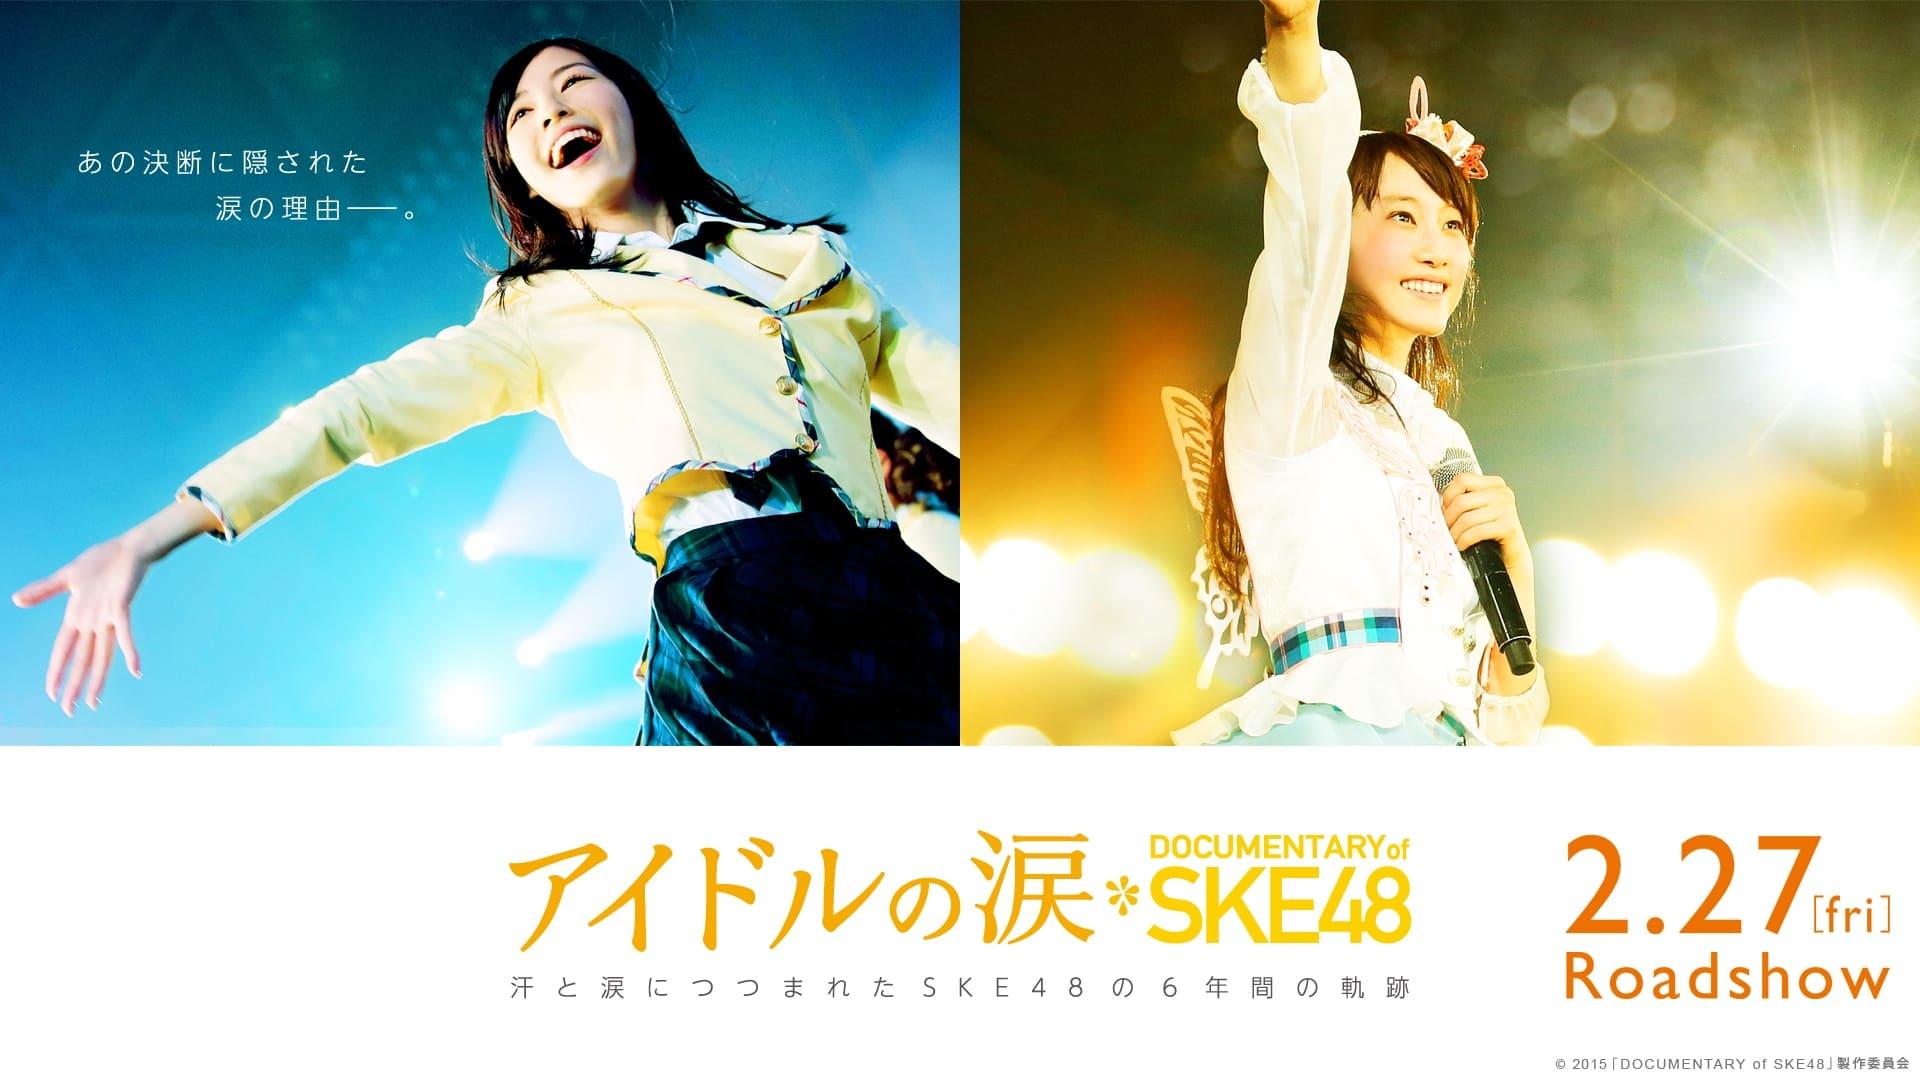 Idols' Tears: Documentary of SKE48 backdrop